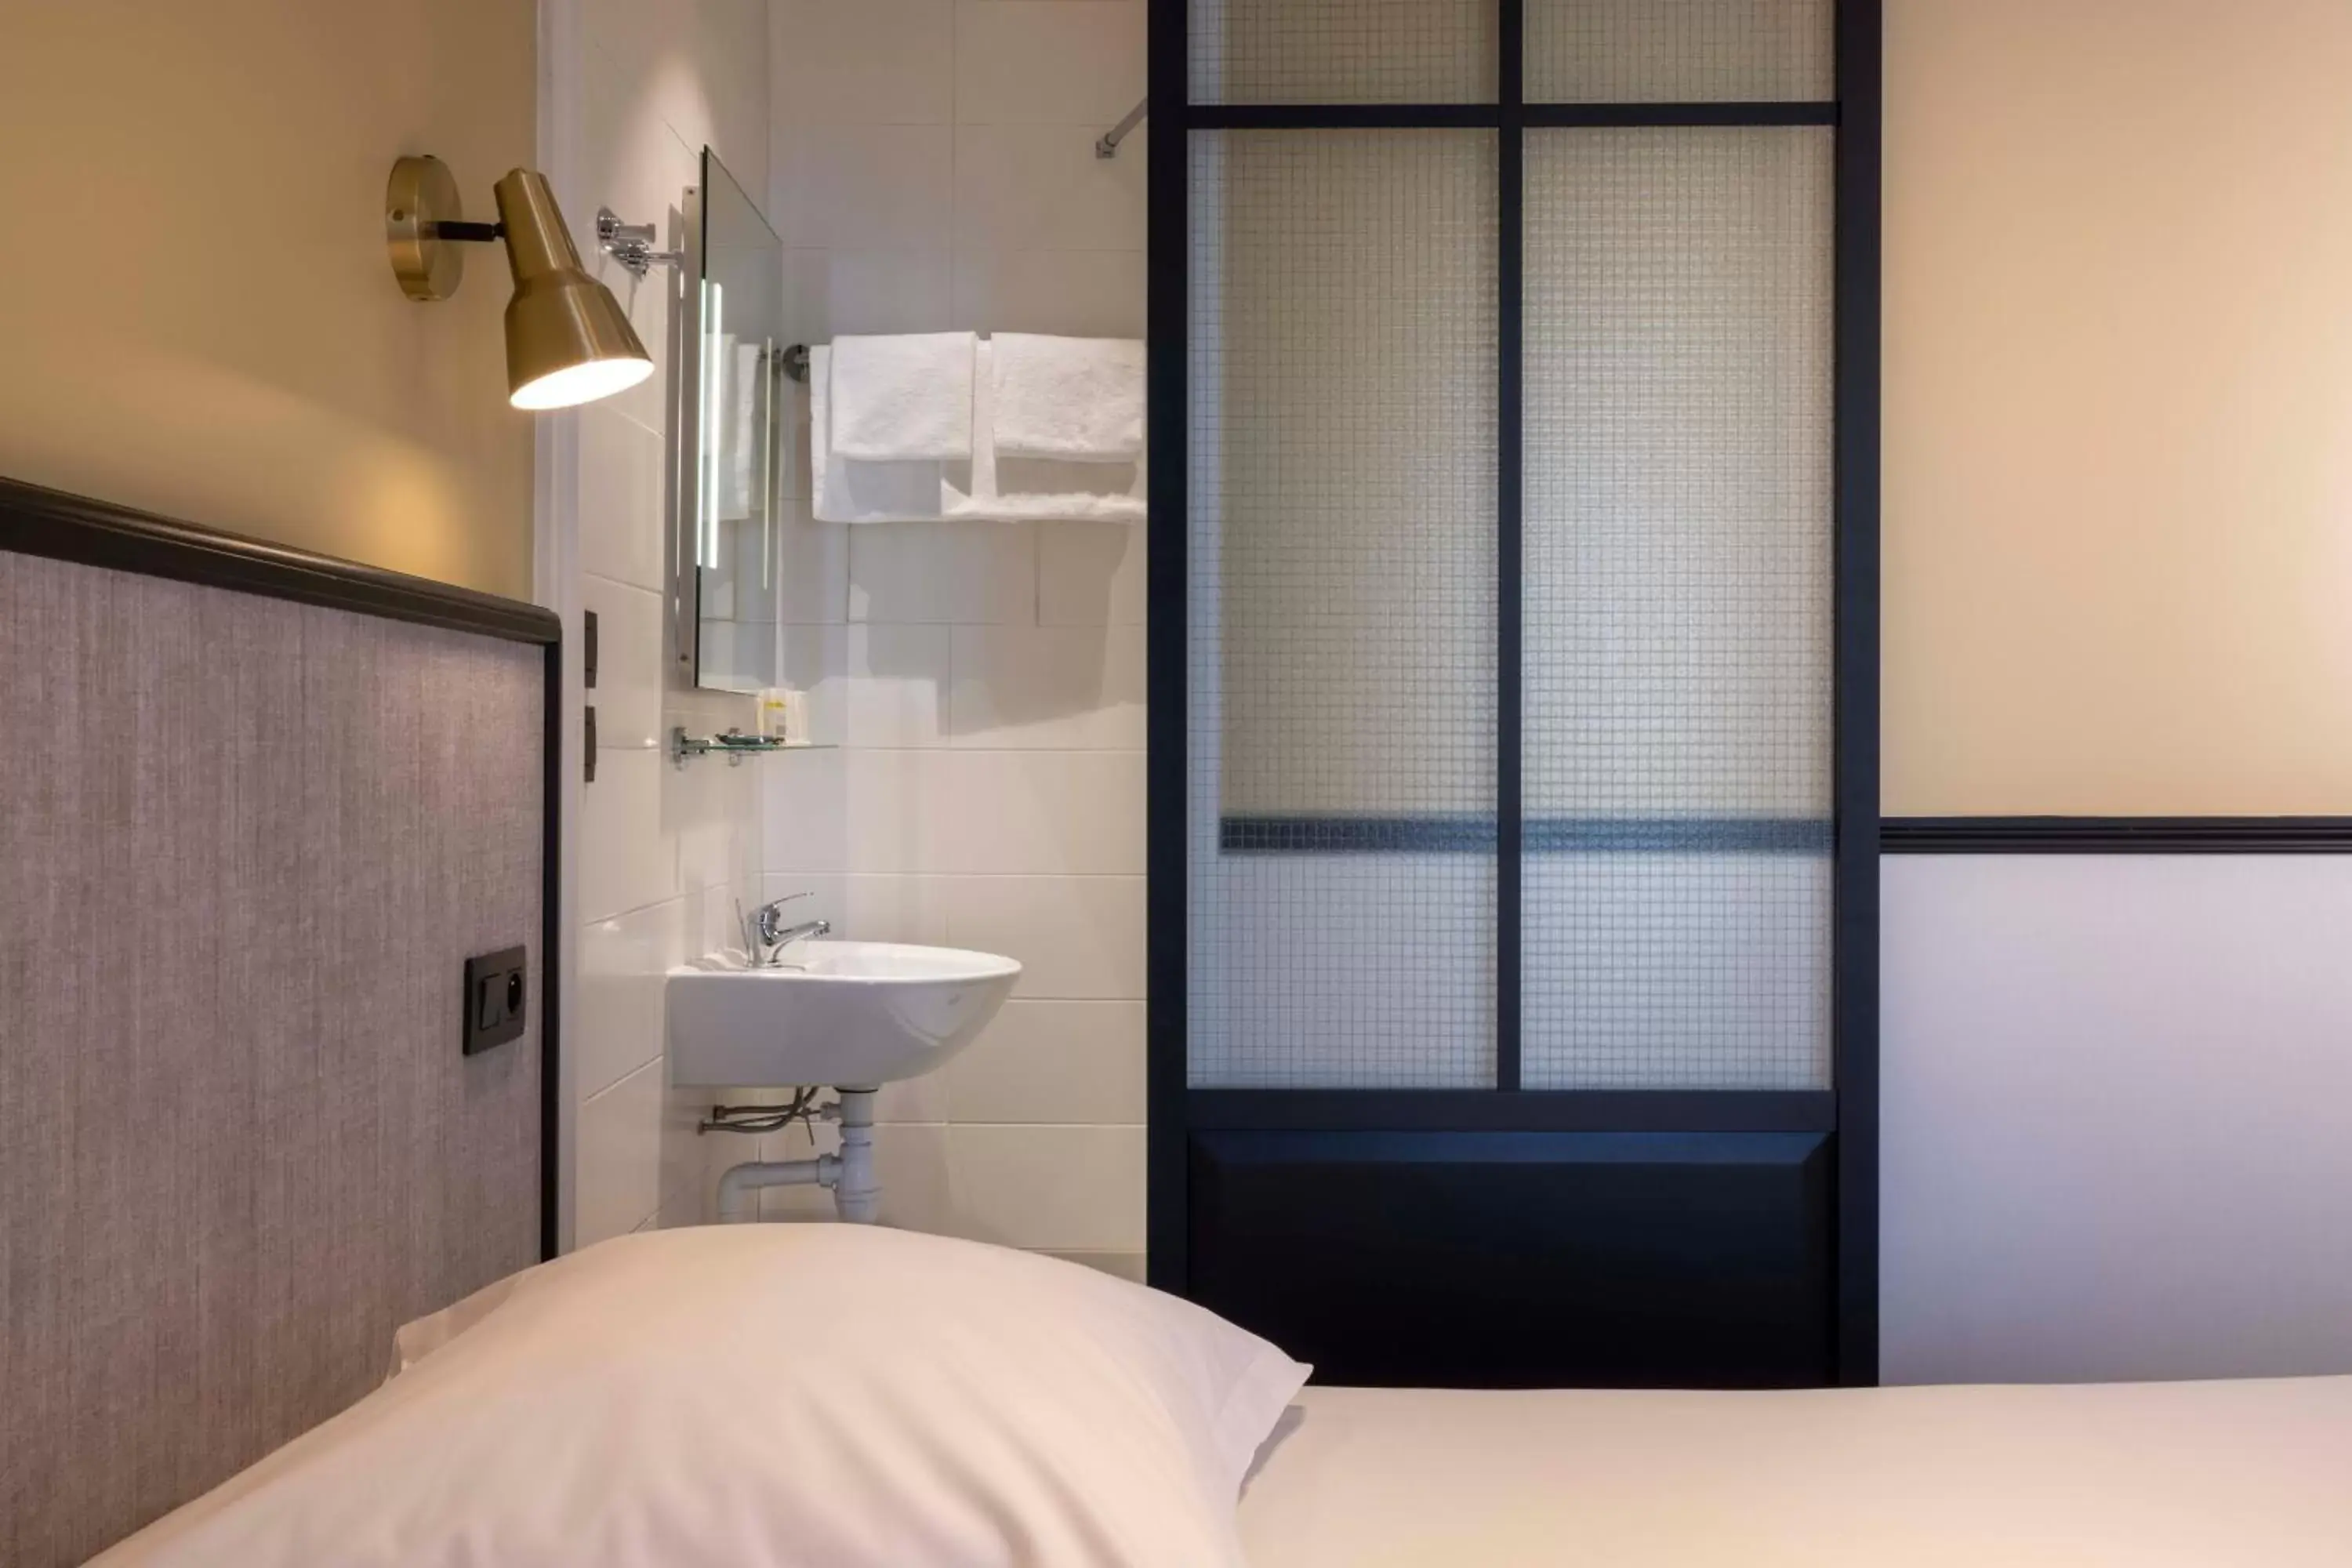 Bedroom, Bathroom in Hotel de l'Aqueduc